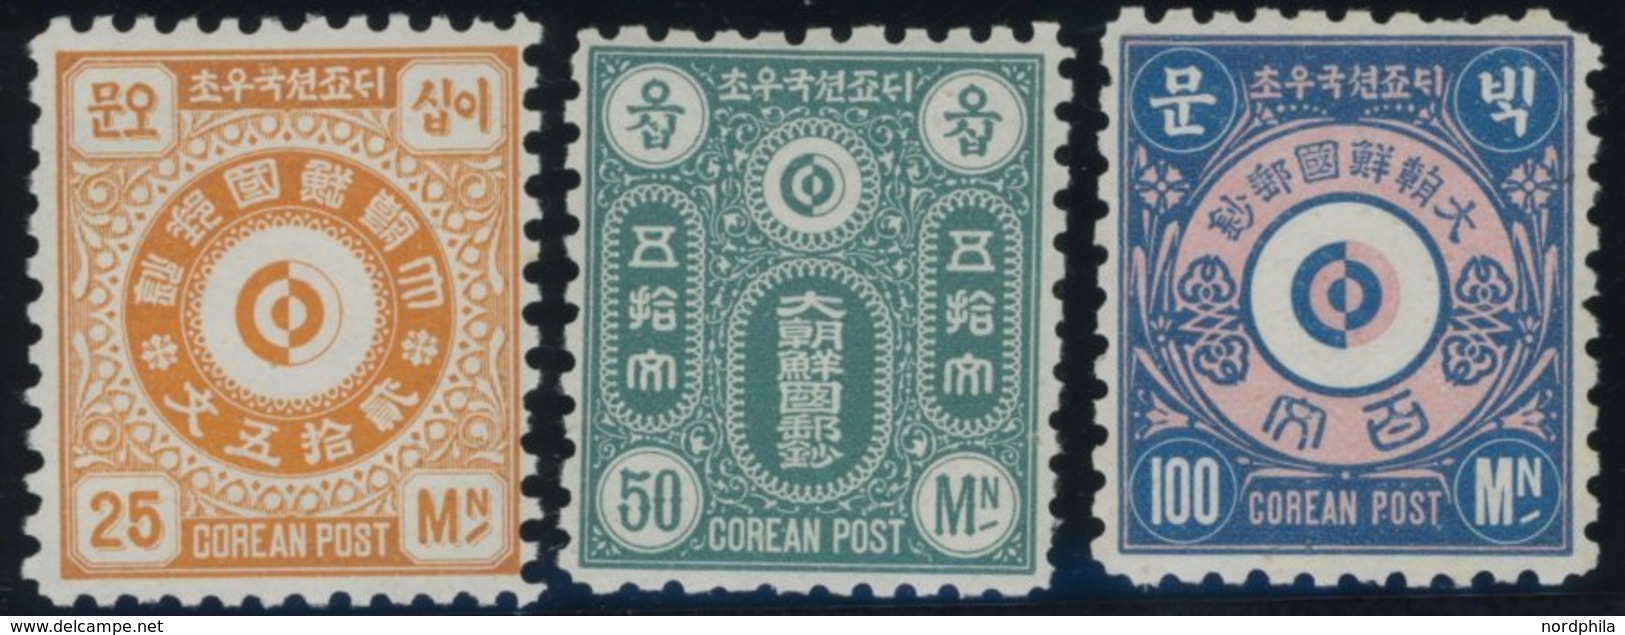 Nicht Ausgegeben: 1884, Stadtpostmarken, Auch Englische Inschrift, Normale Zähnung, 3 Postfrische Werte Pracht -> Automa - Korea, North